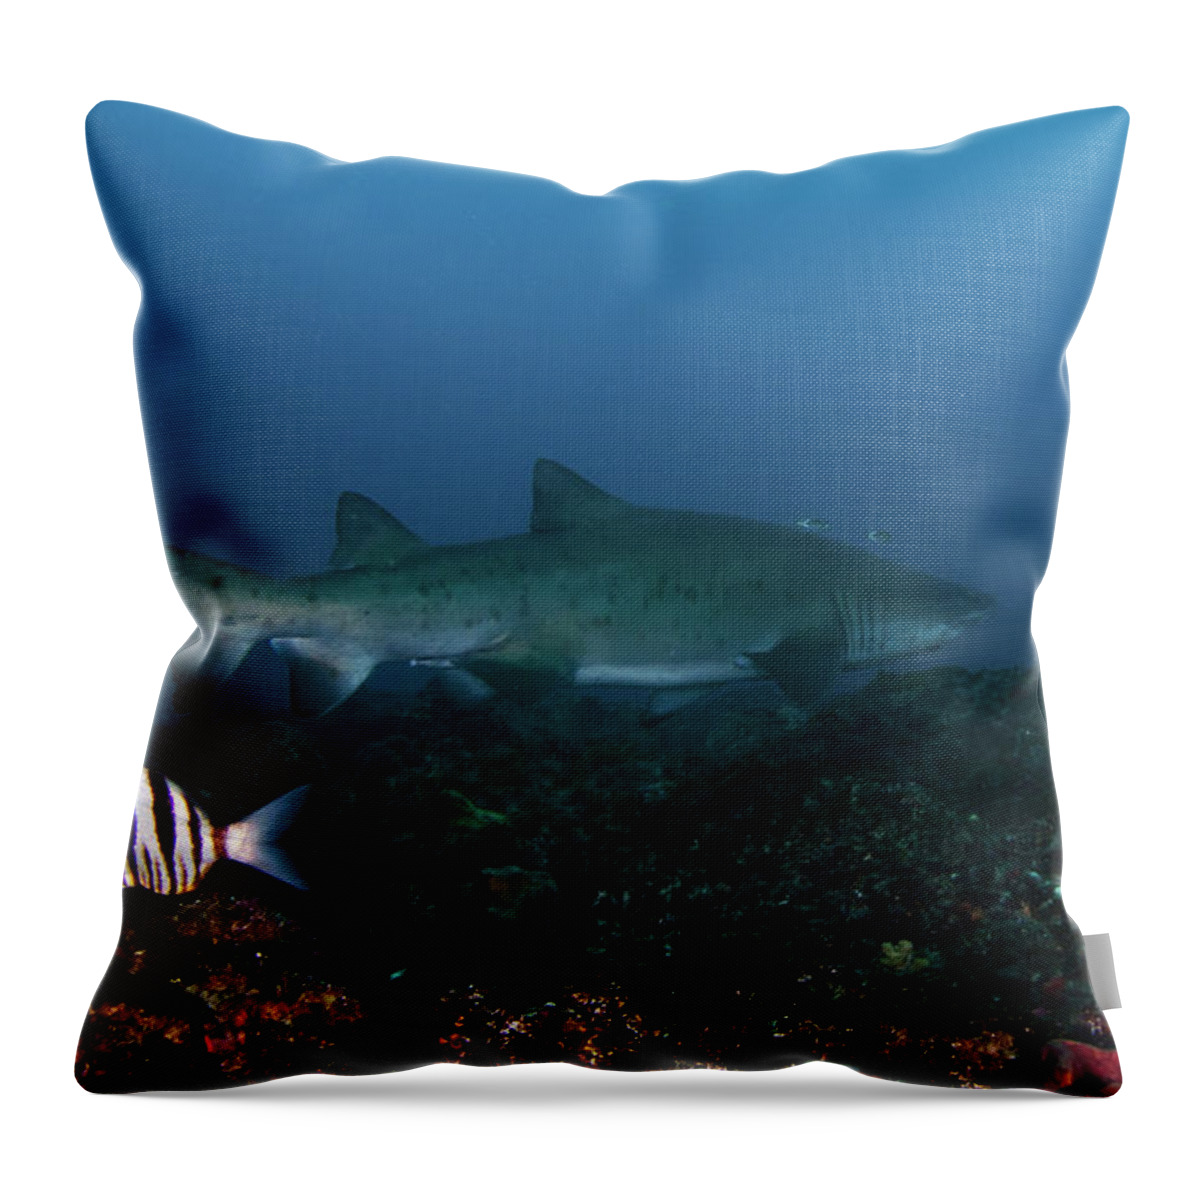 Sand Shark Throw Pillow featuring the photograph Ragged Tooth Shark, South-africa by Joost Van Uffelen